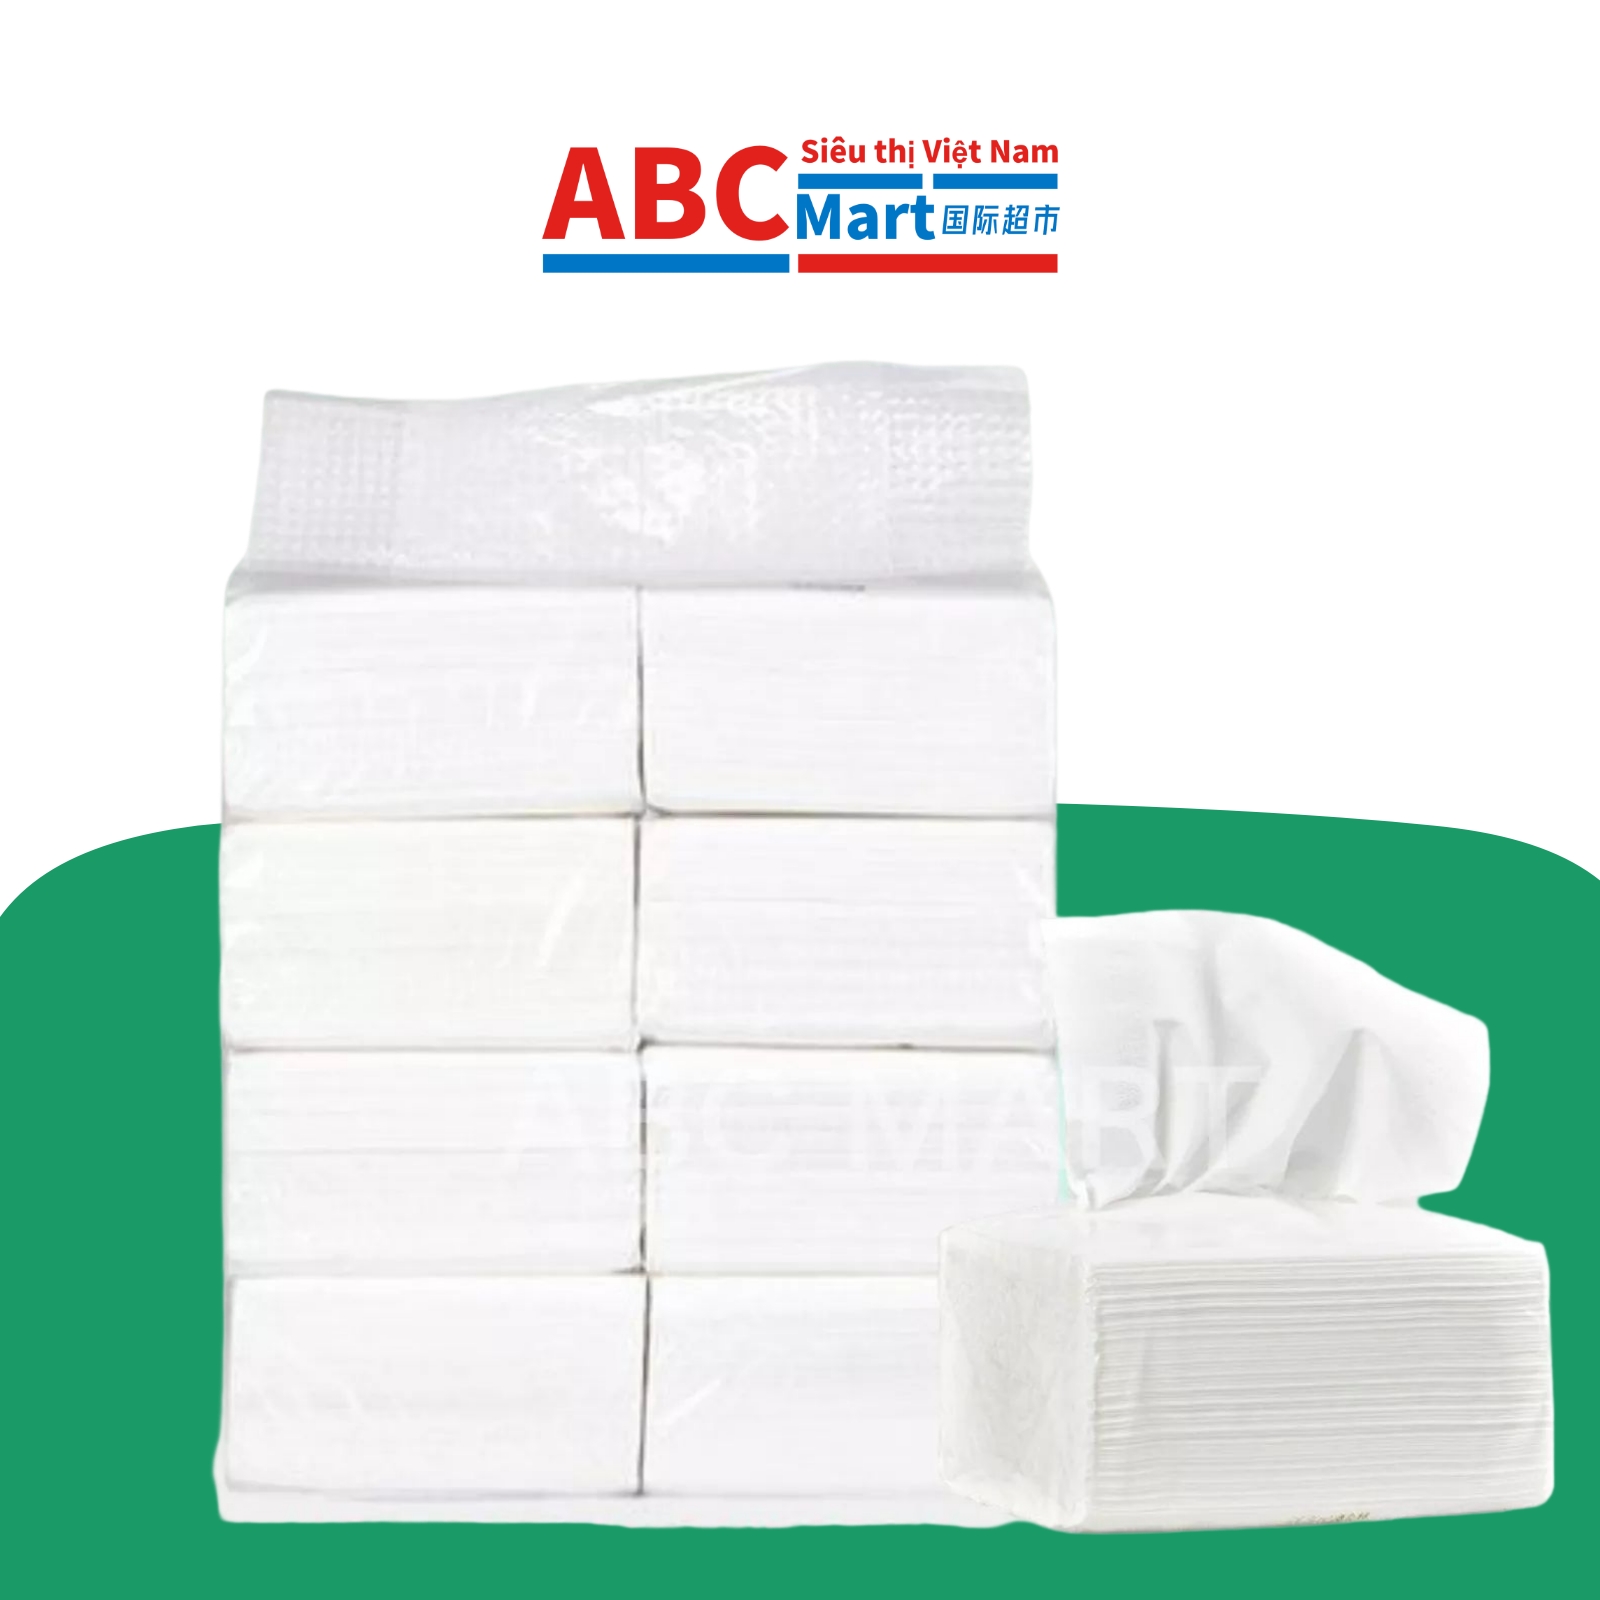 【中国-Khăn giấy trắng白色抽纸1提8包】180P一提 超实惠白抽纸卫生纸巾-ABCMart 国际超市